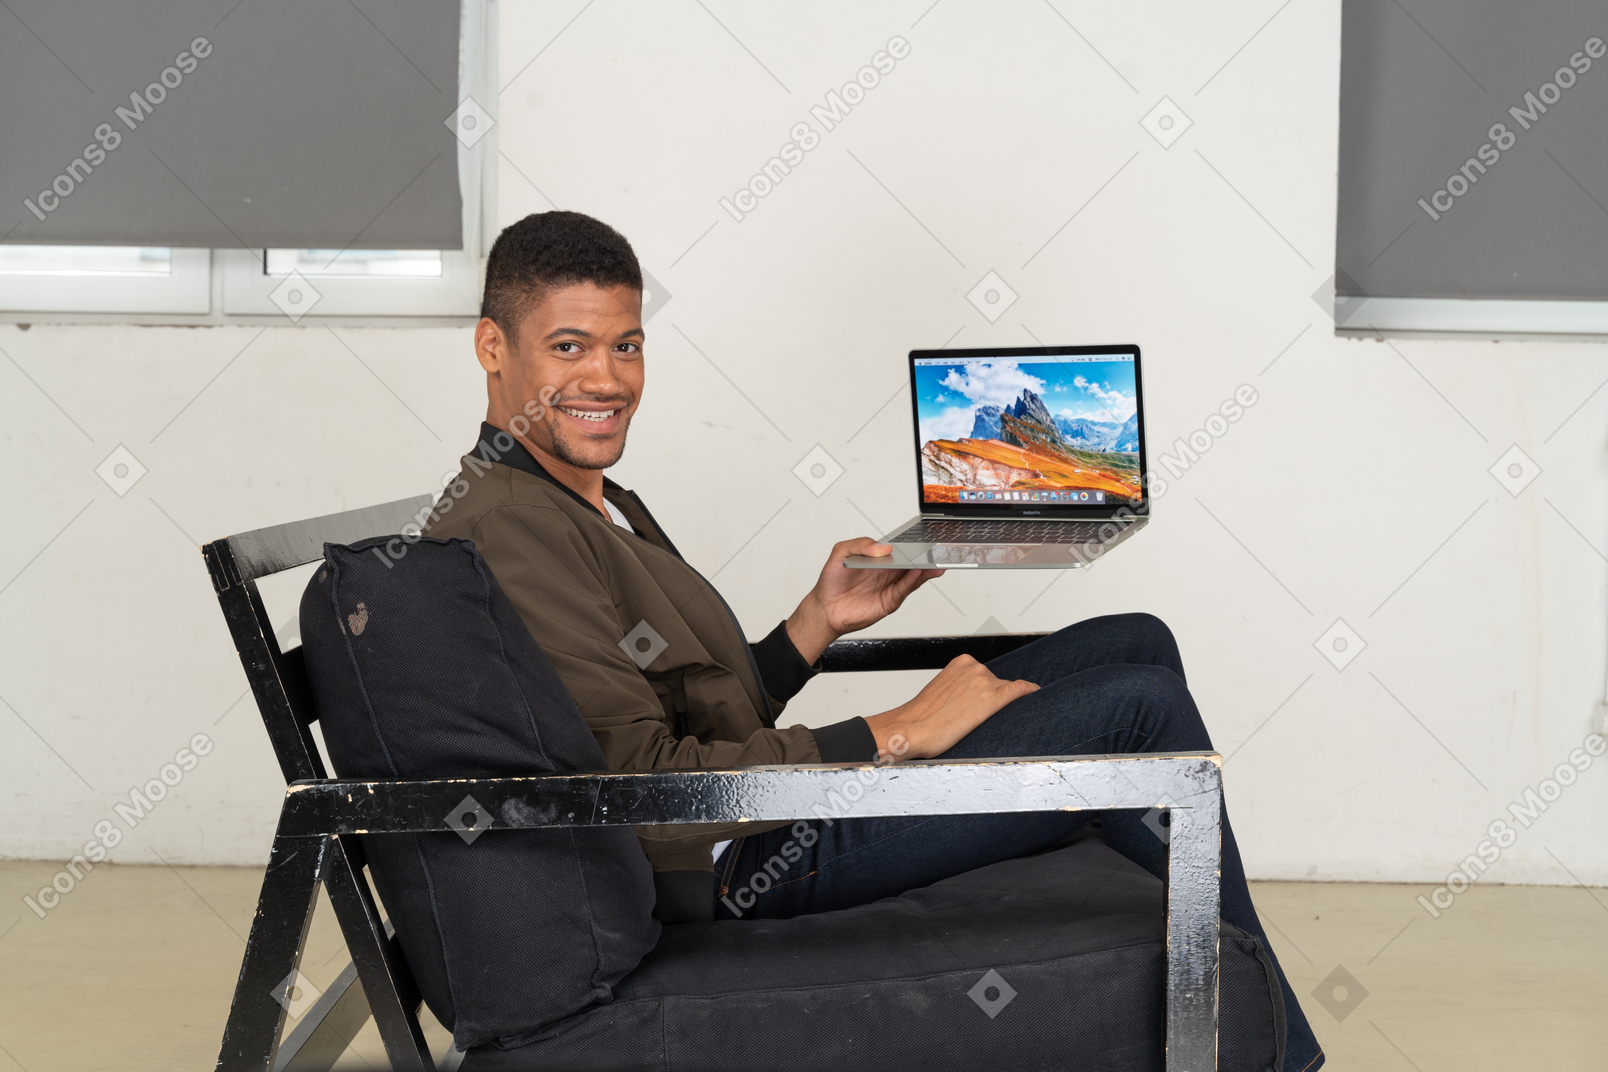 Вид сбоку молодого человека, сидящего на диване и держащего ноутбук